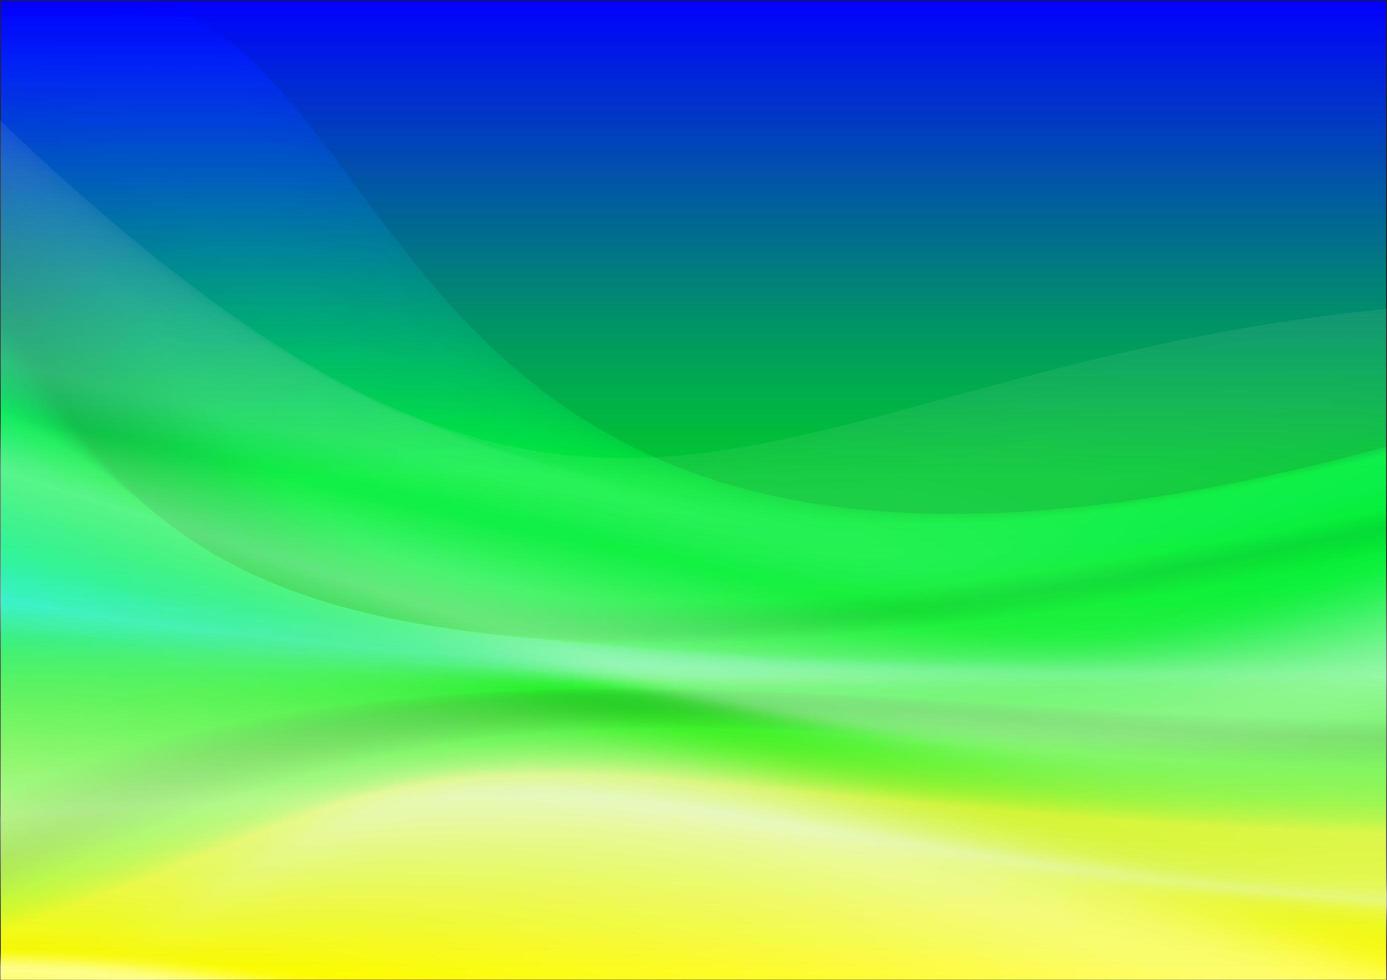 degradado azul, verde y amarillo que fluye formas curvas vector